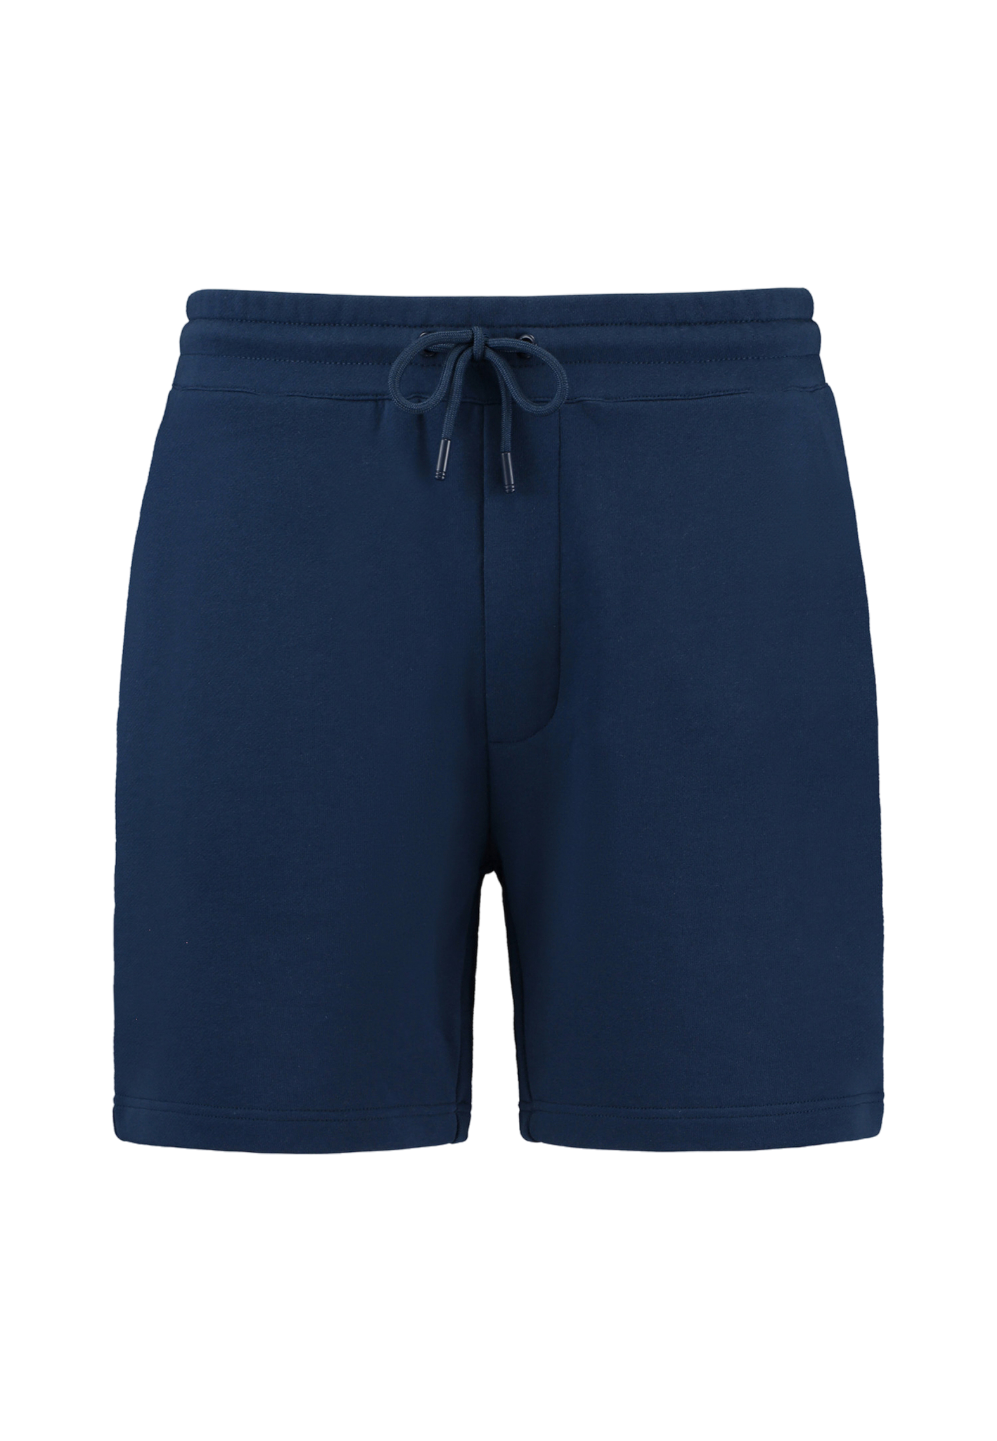 Shiwi Homewear broek - Bleu - maat S (S) - Heren Volwassenen - Katoen- 1541210037-650-S